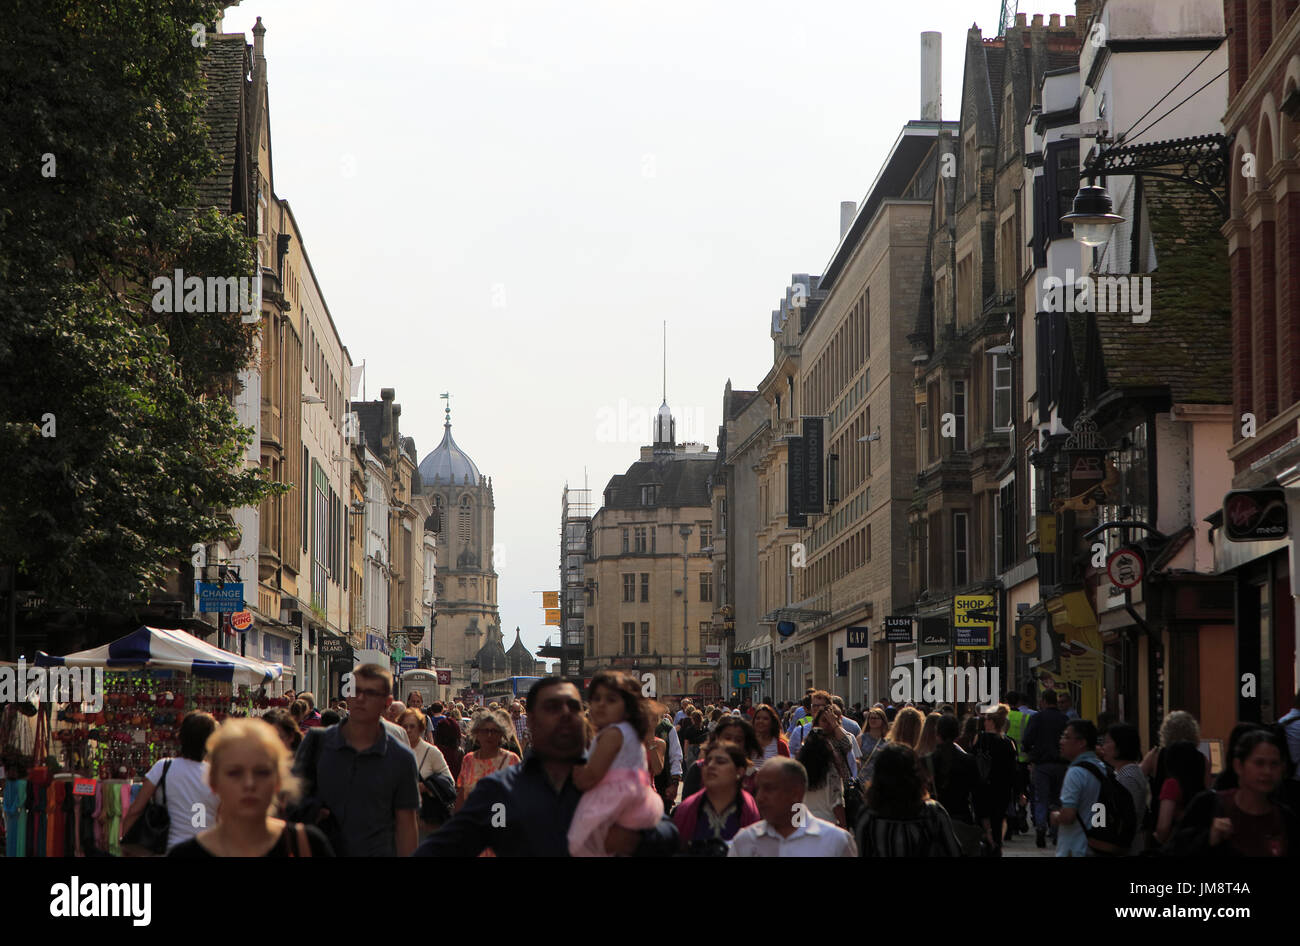 Des foules de gens shopping, Cornmarket Street, centre-ville d'Oxford, England, UK Banque D'Images